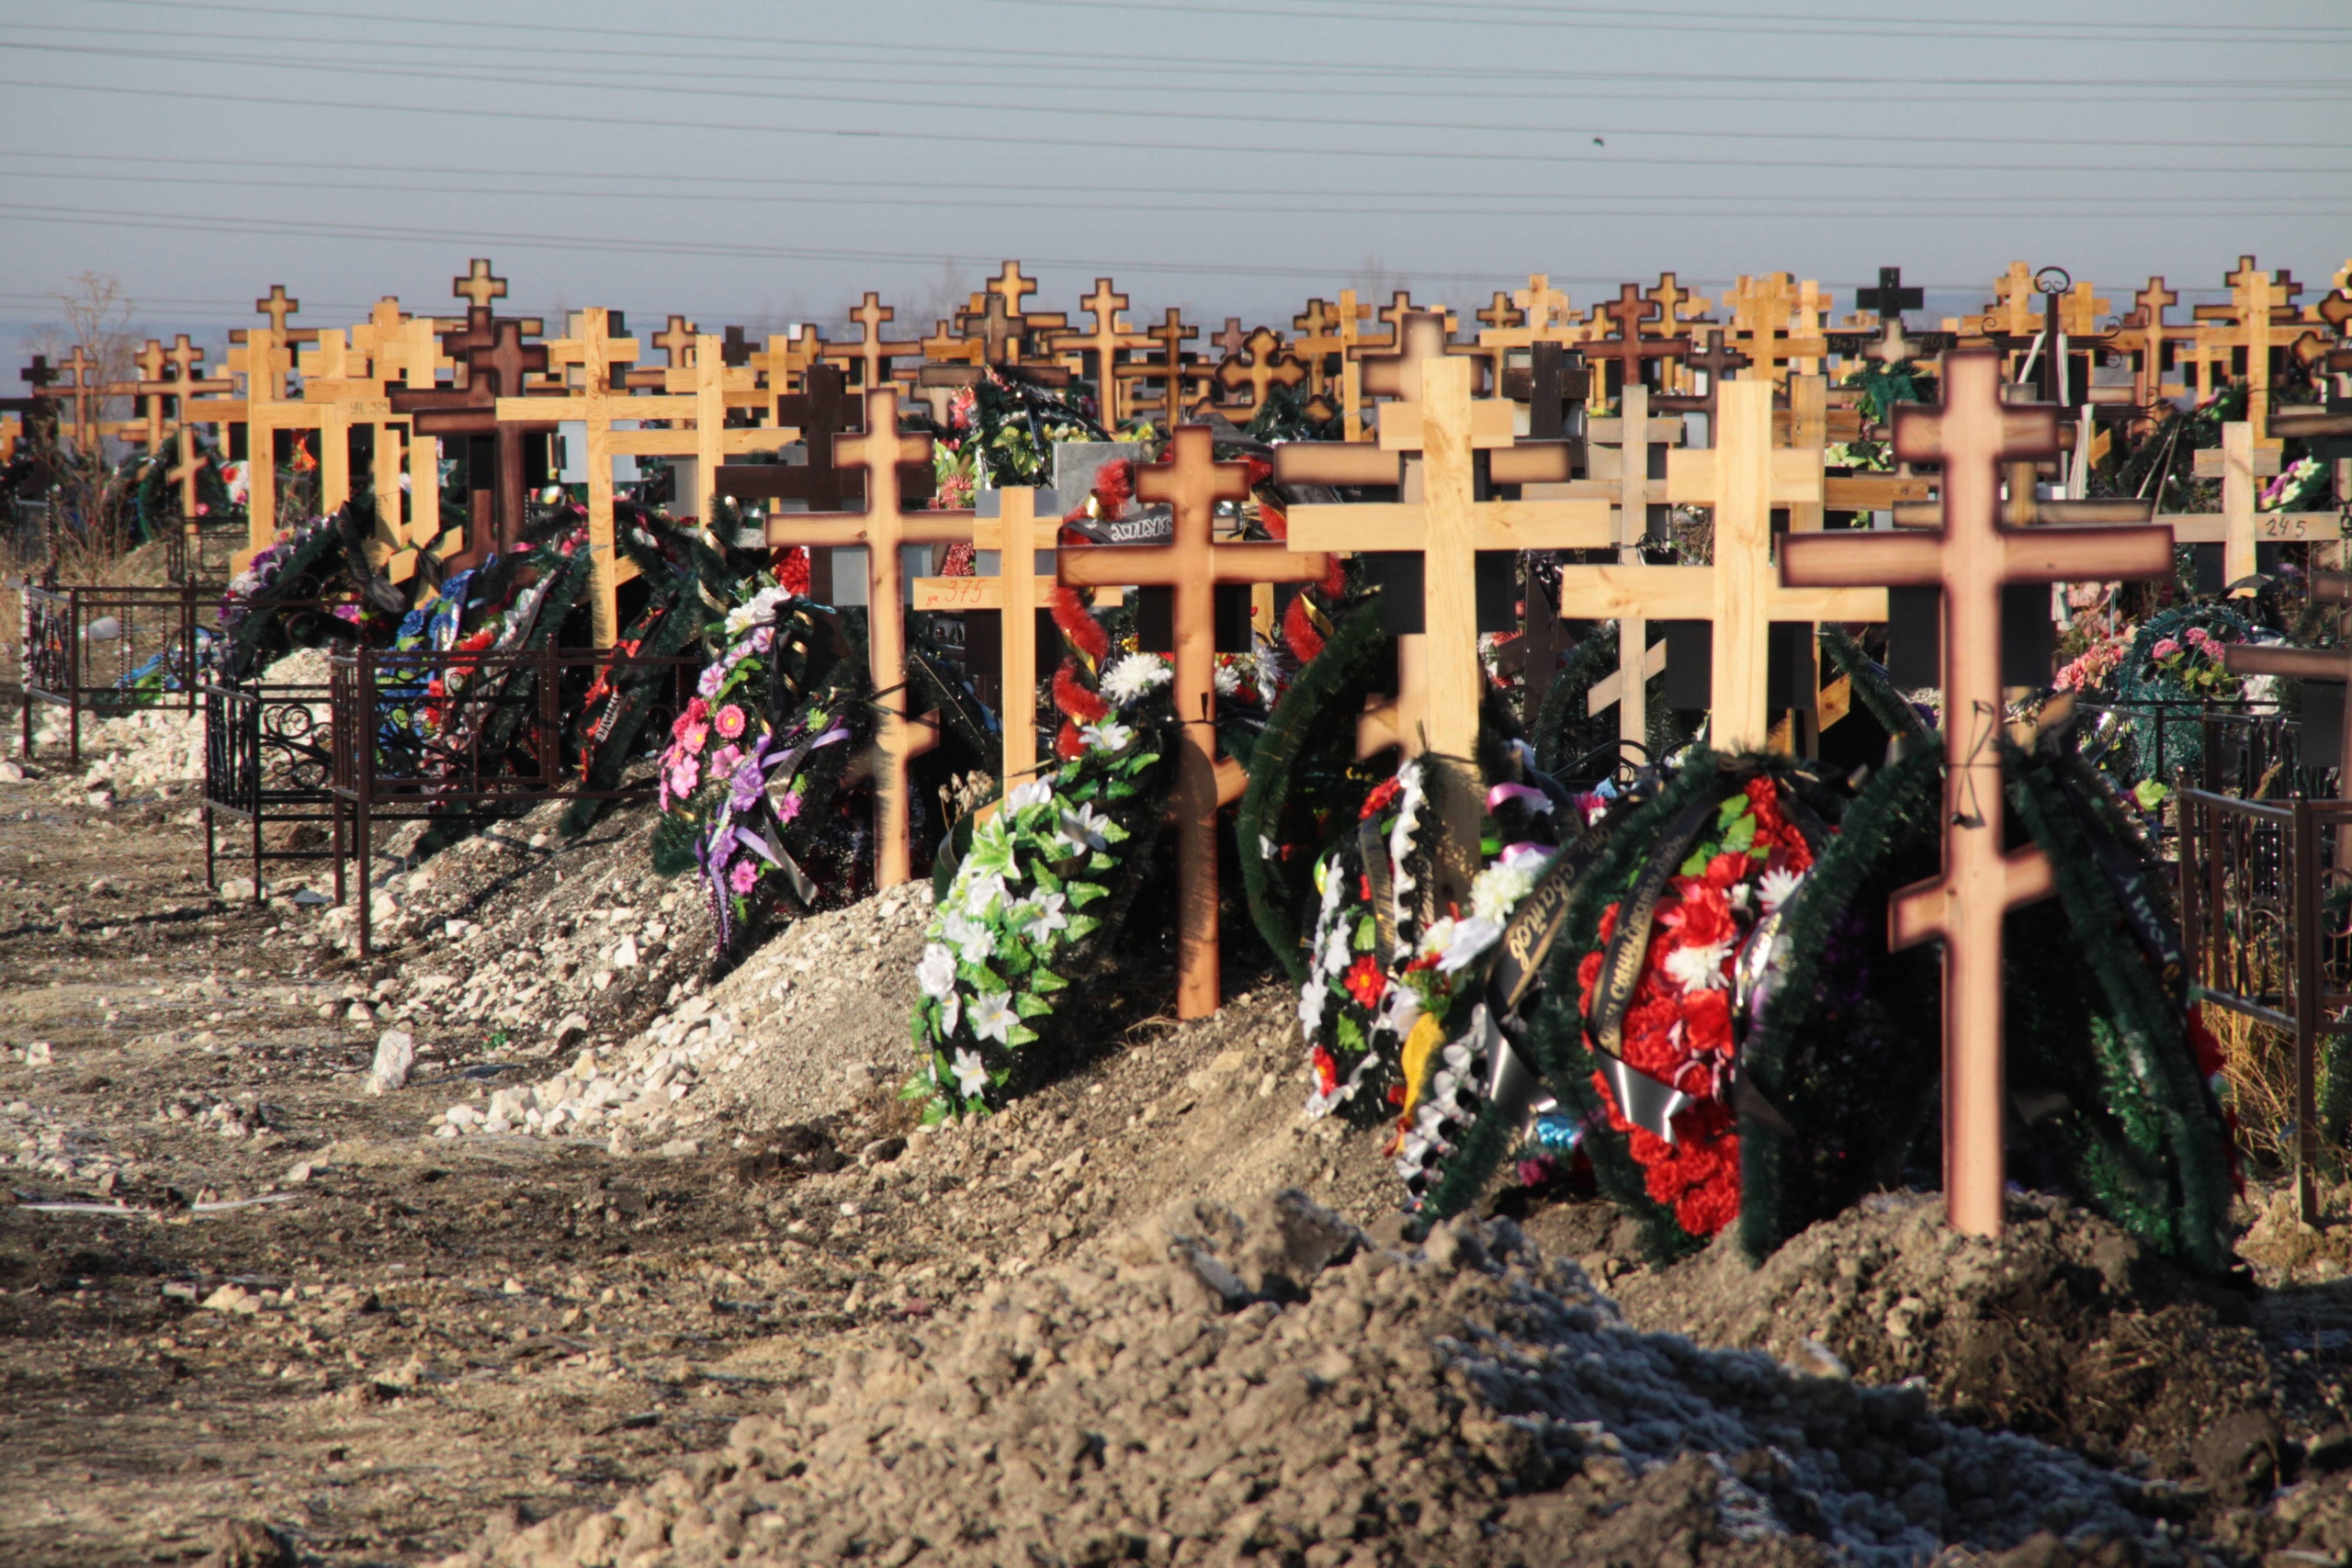 молоканский крест на кладбище фото